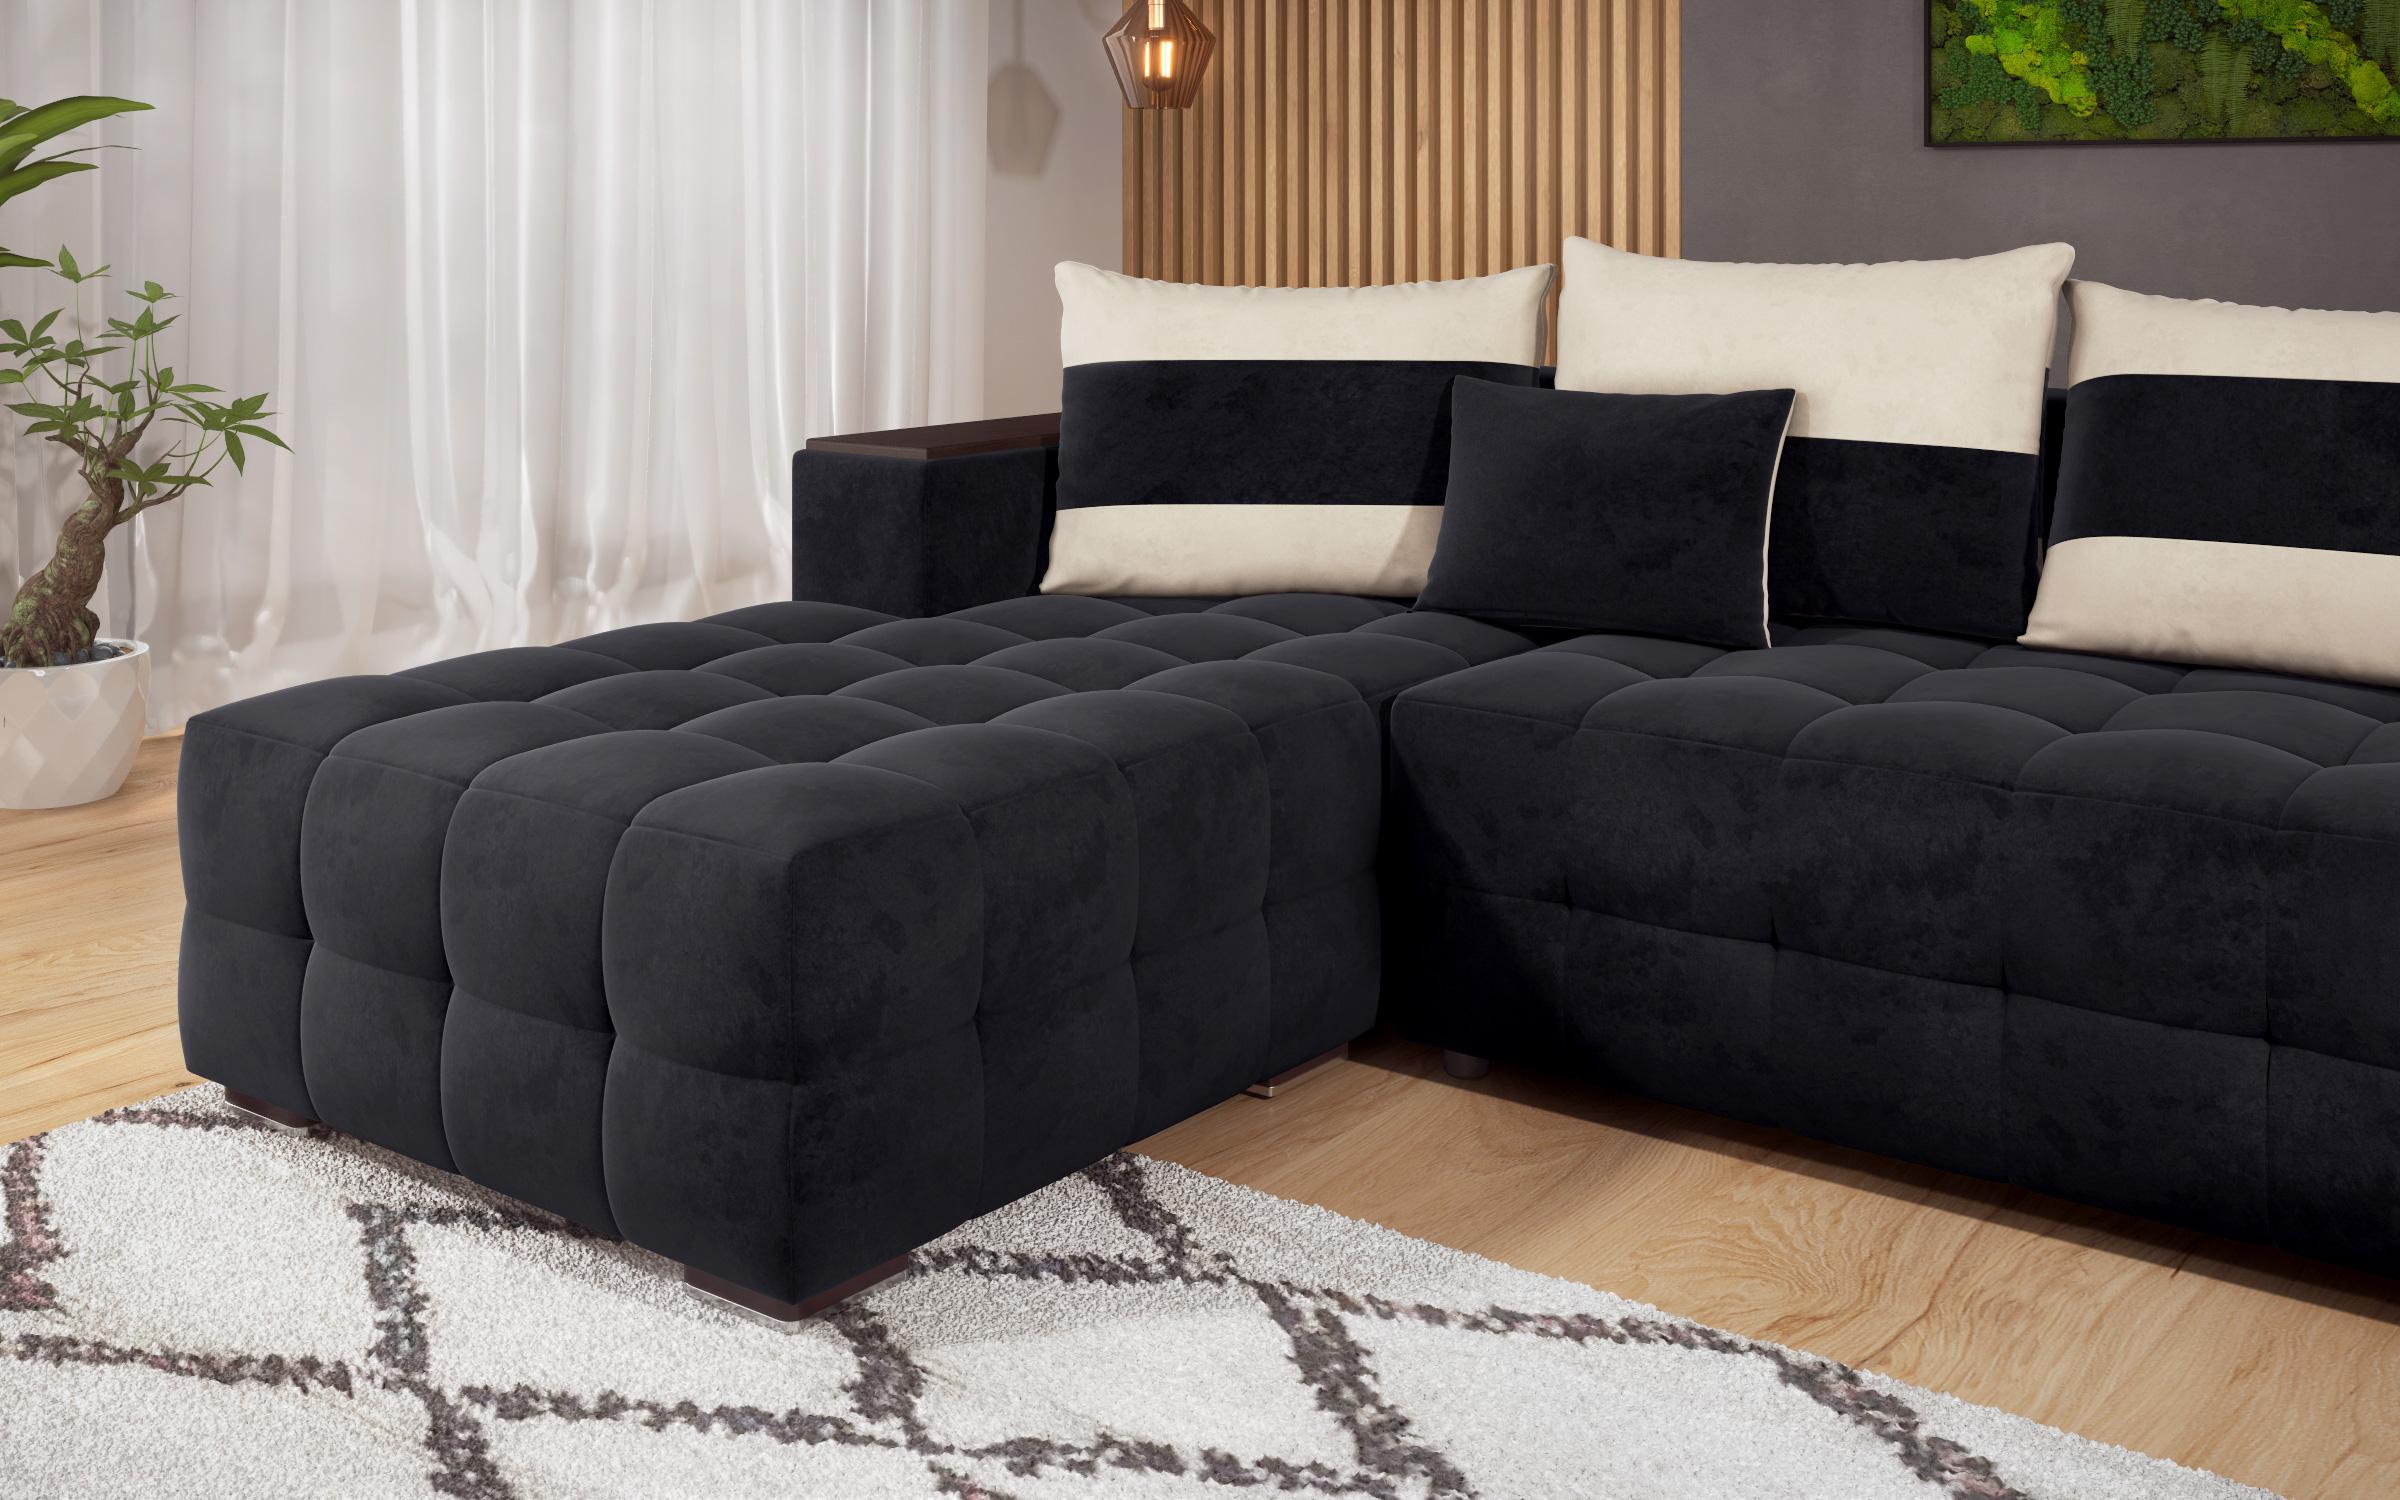 Γωνιακός καναπές - κρεβάτι με ανάκλιντρο και μπράτσο μίνι ραφιέρα Melvin, μαύρο + ανοιχτό μπεζ  6